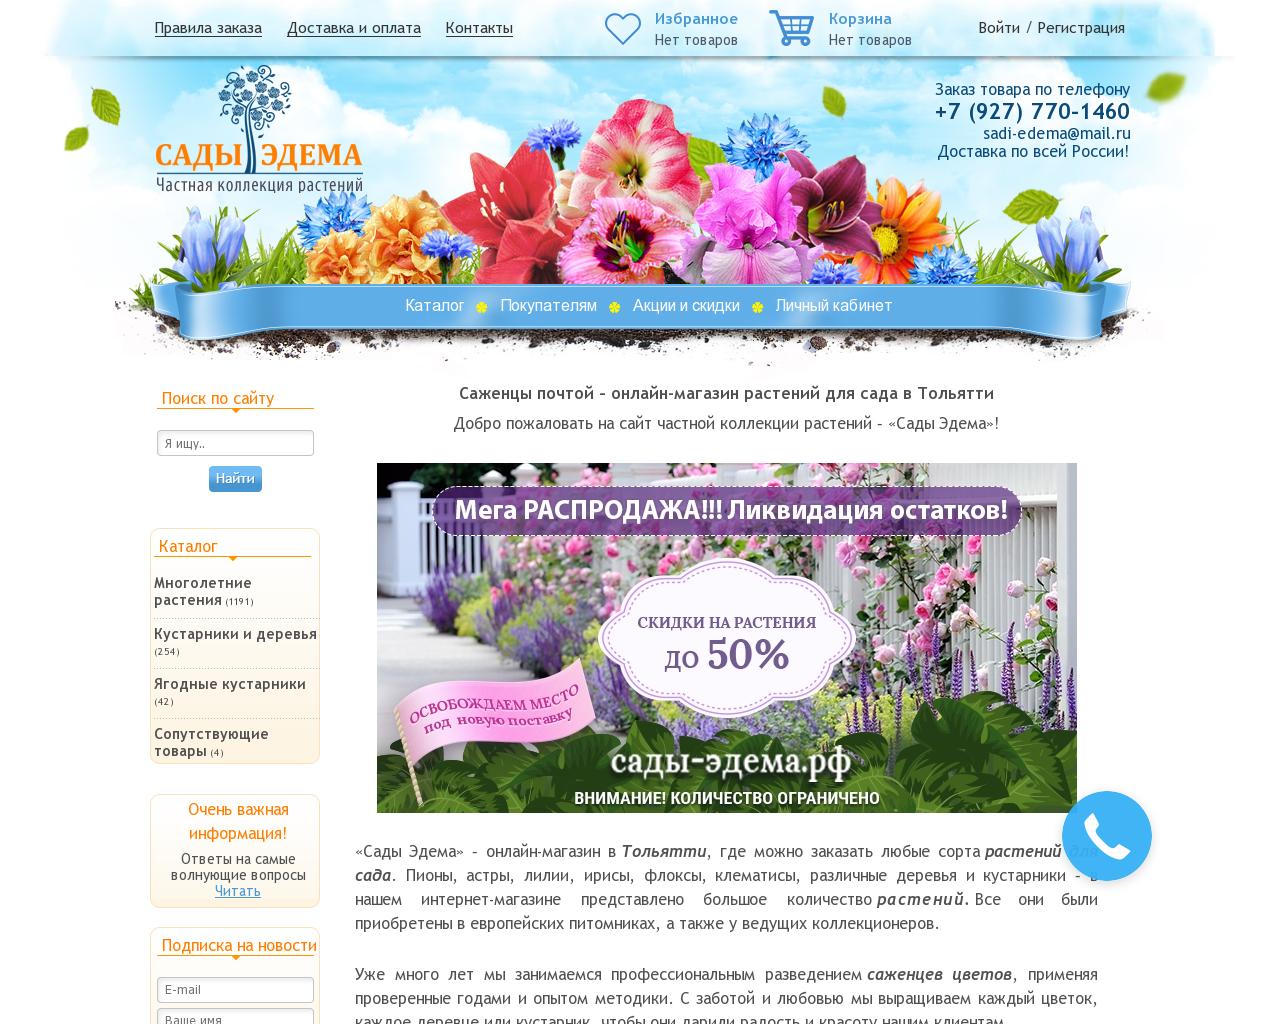 Изображение сайта сады-эдема.рф в разрешении 1280x1024